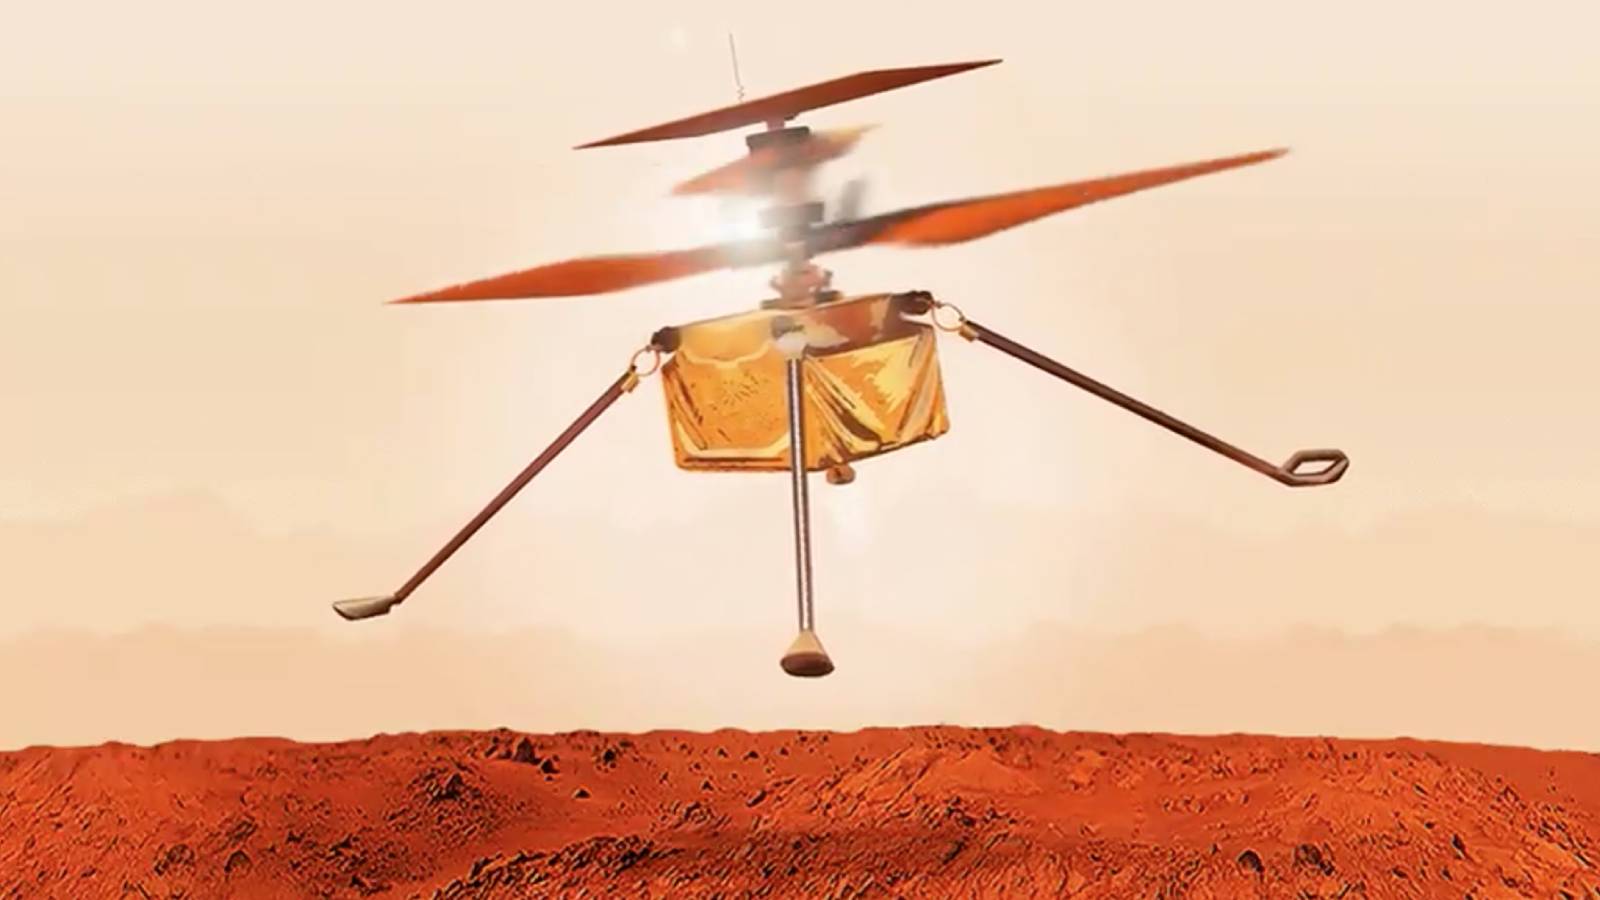 Pendant ce temps, sur Mars, Ingenuity bat son propre record de vitesse (et nous envoie la vidéo)